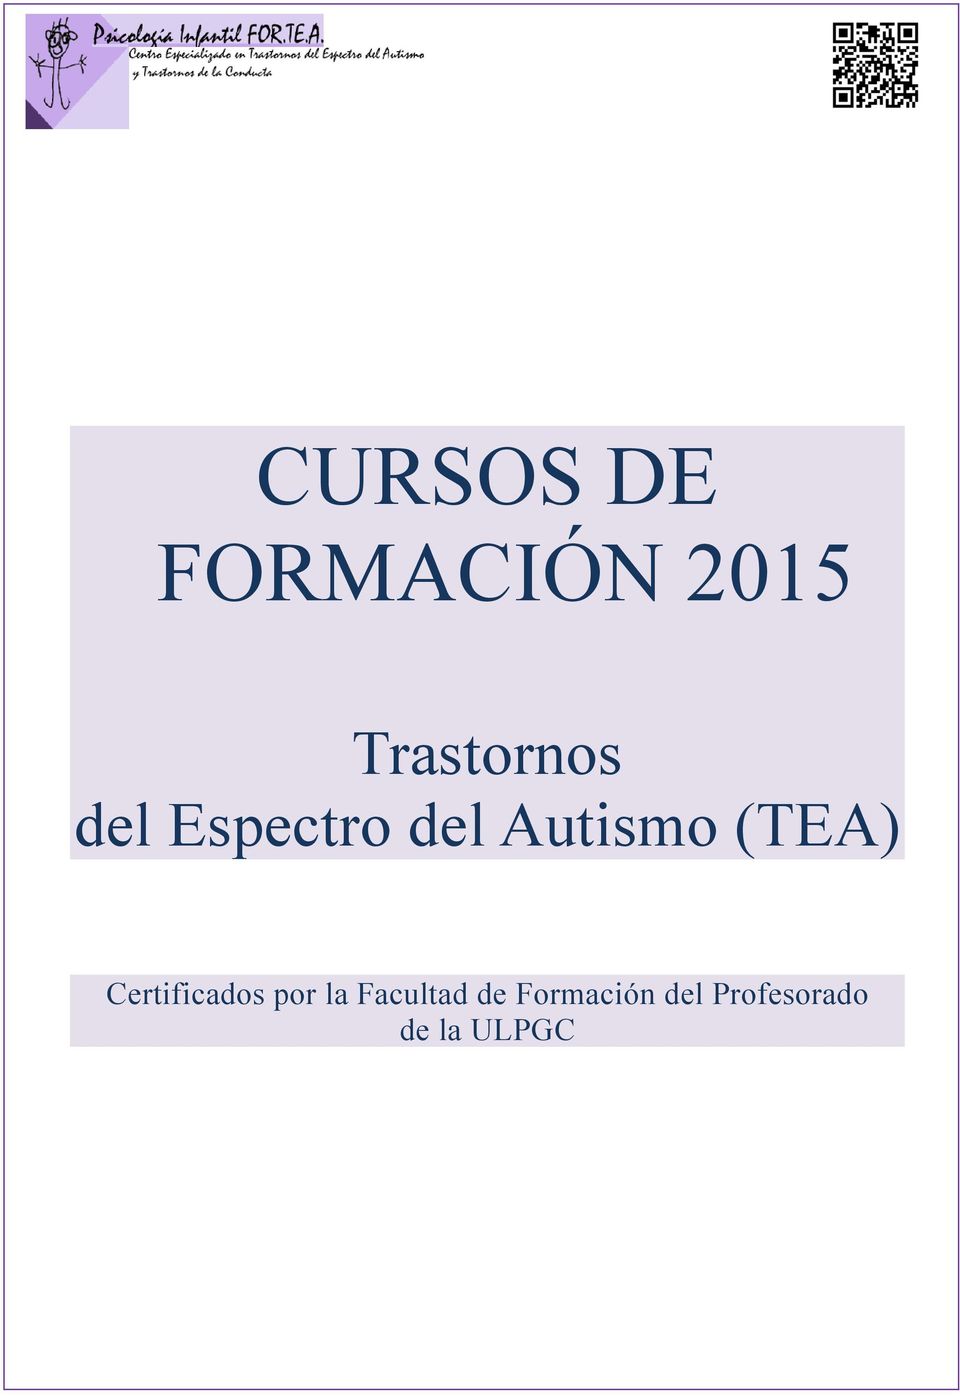 Autismo (TEA) Certificados por la